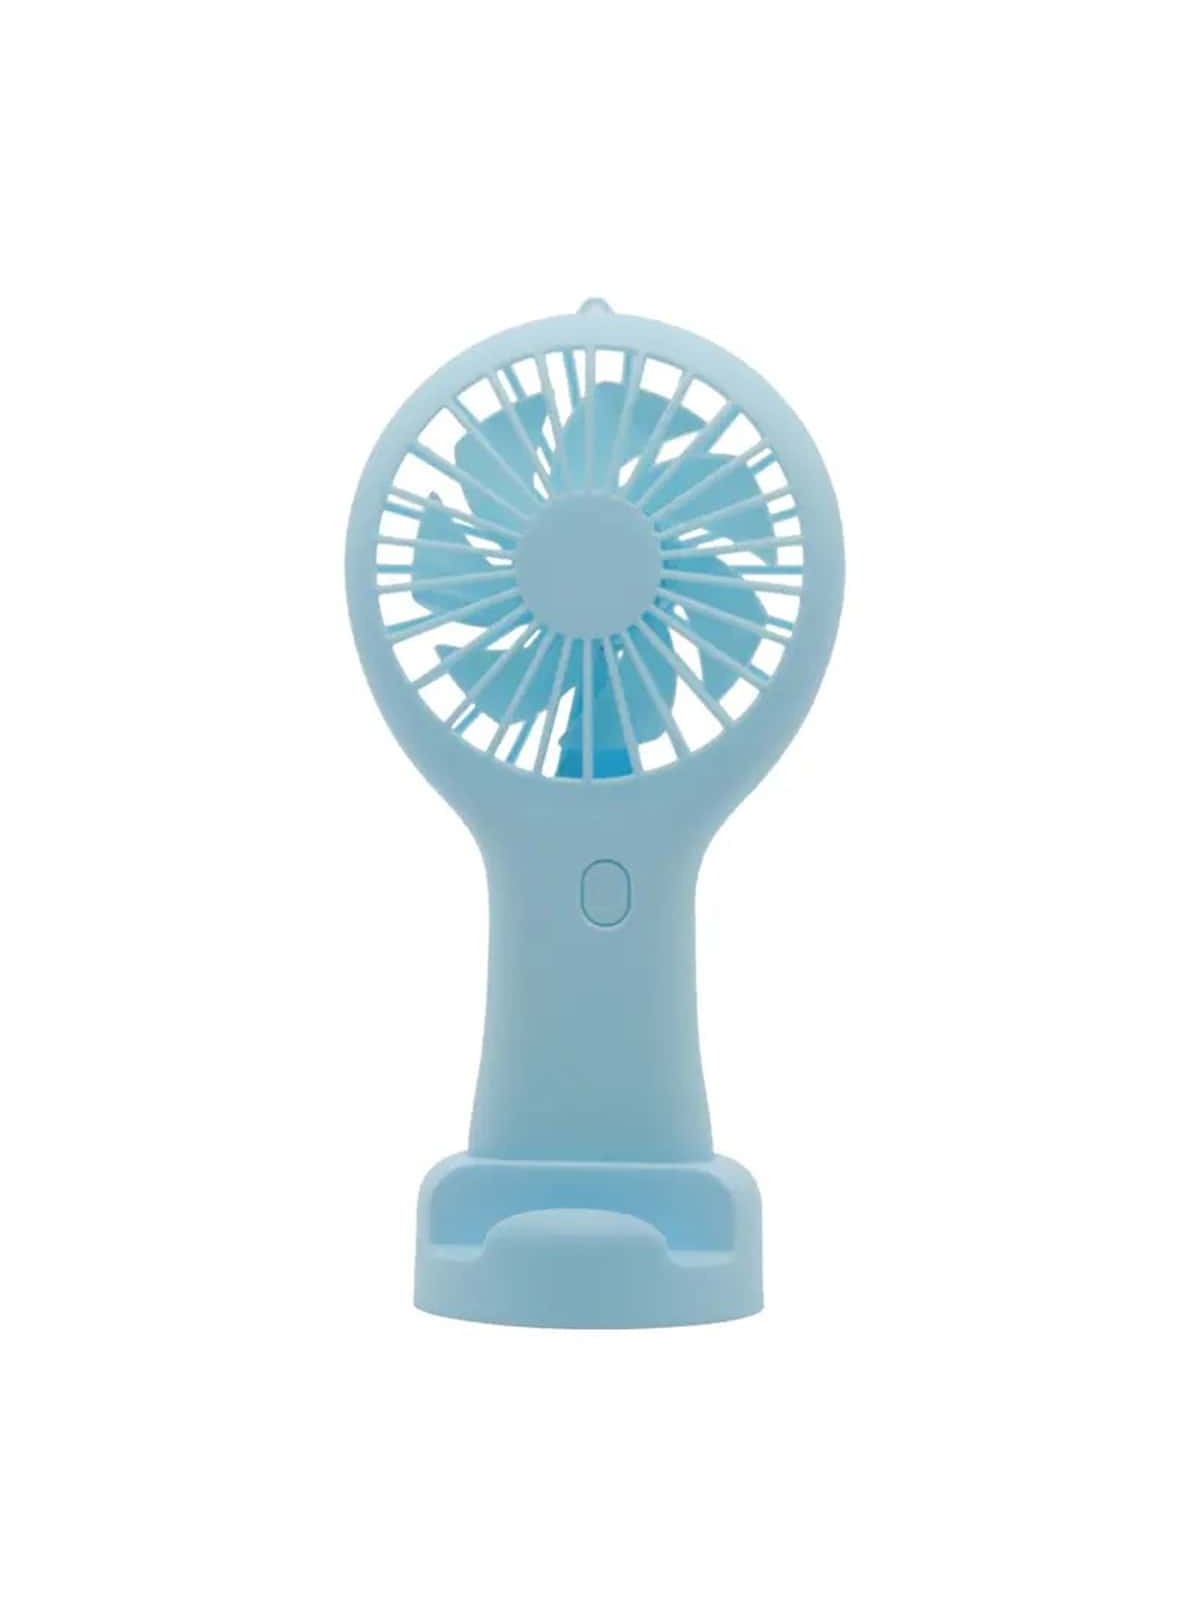 1W Portable Hand Fan Rechargeable Cooling Mini USB Fan Handheld Small Fan Cooler Office Student Gifts Mini Fan-Blue-1